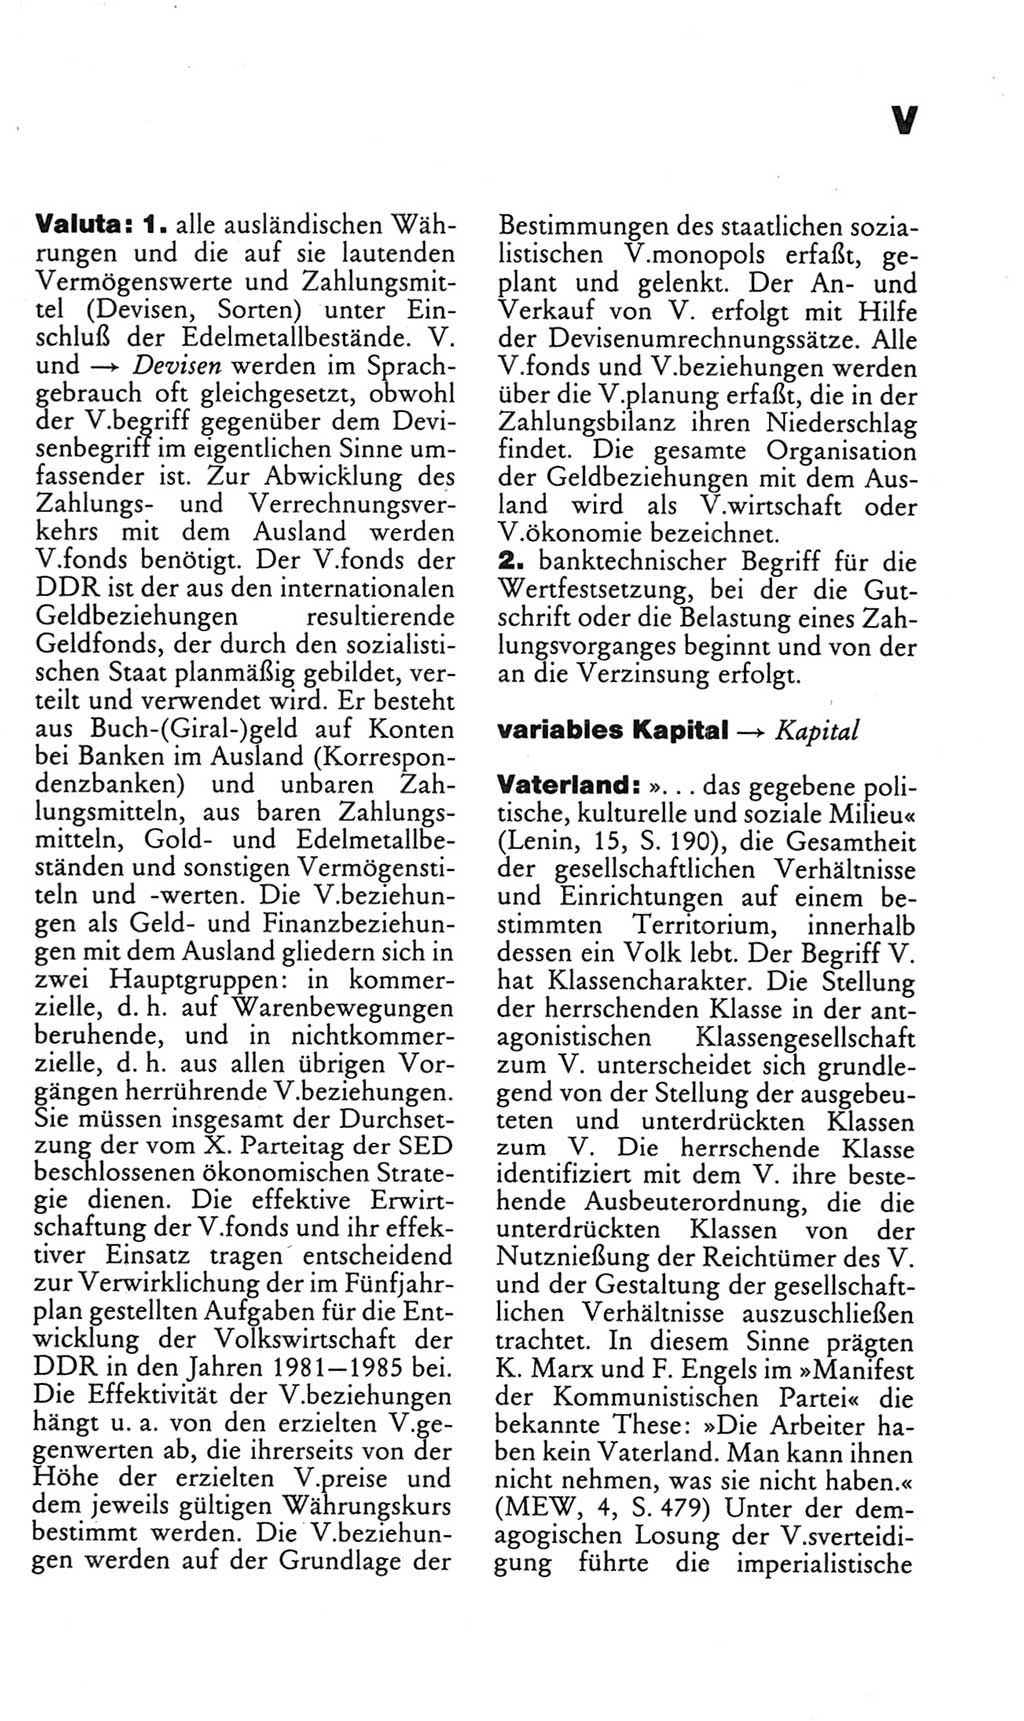 Kleines politisches Wörterbuch [Deutsche Demokratische Republik (DDR)] 1985, Seite 965 (Kl. pol. Wb. DDR 1985, S. 965)